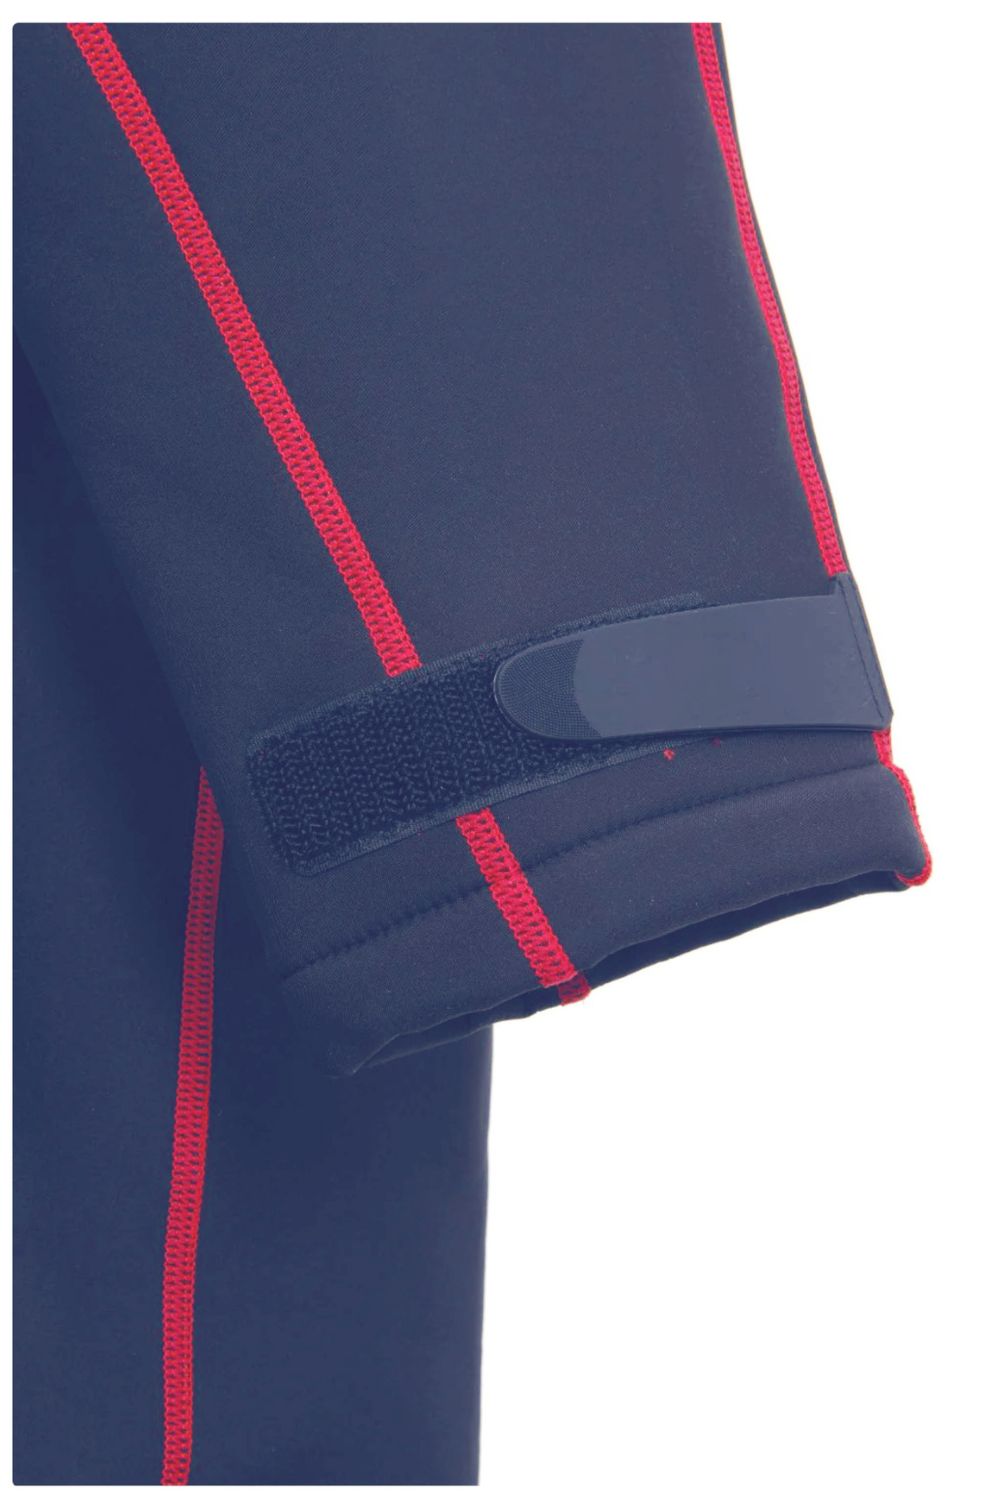 The Essential Igloo Jacket (Unisex)